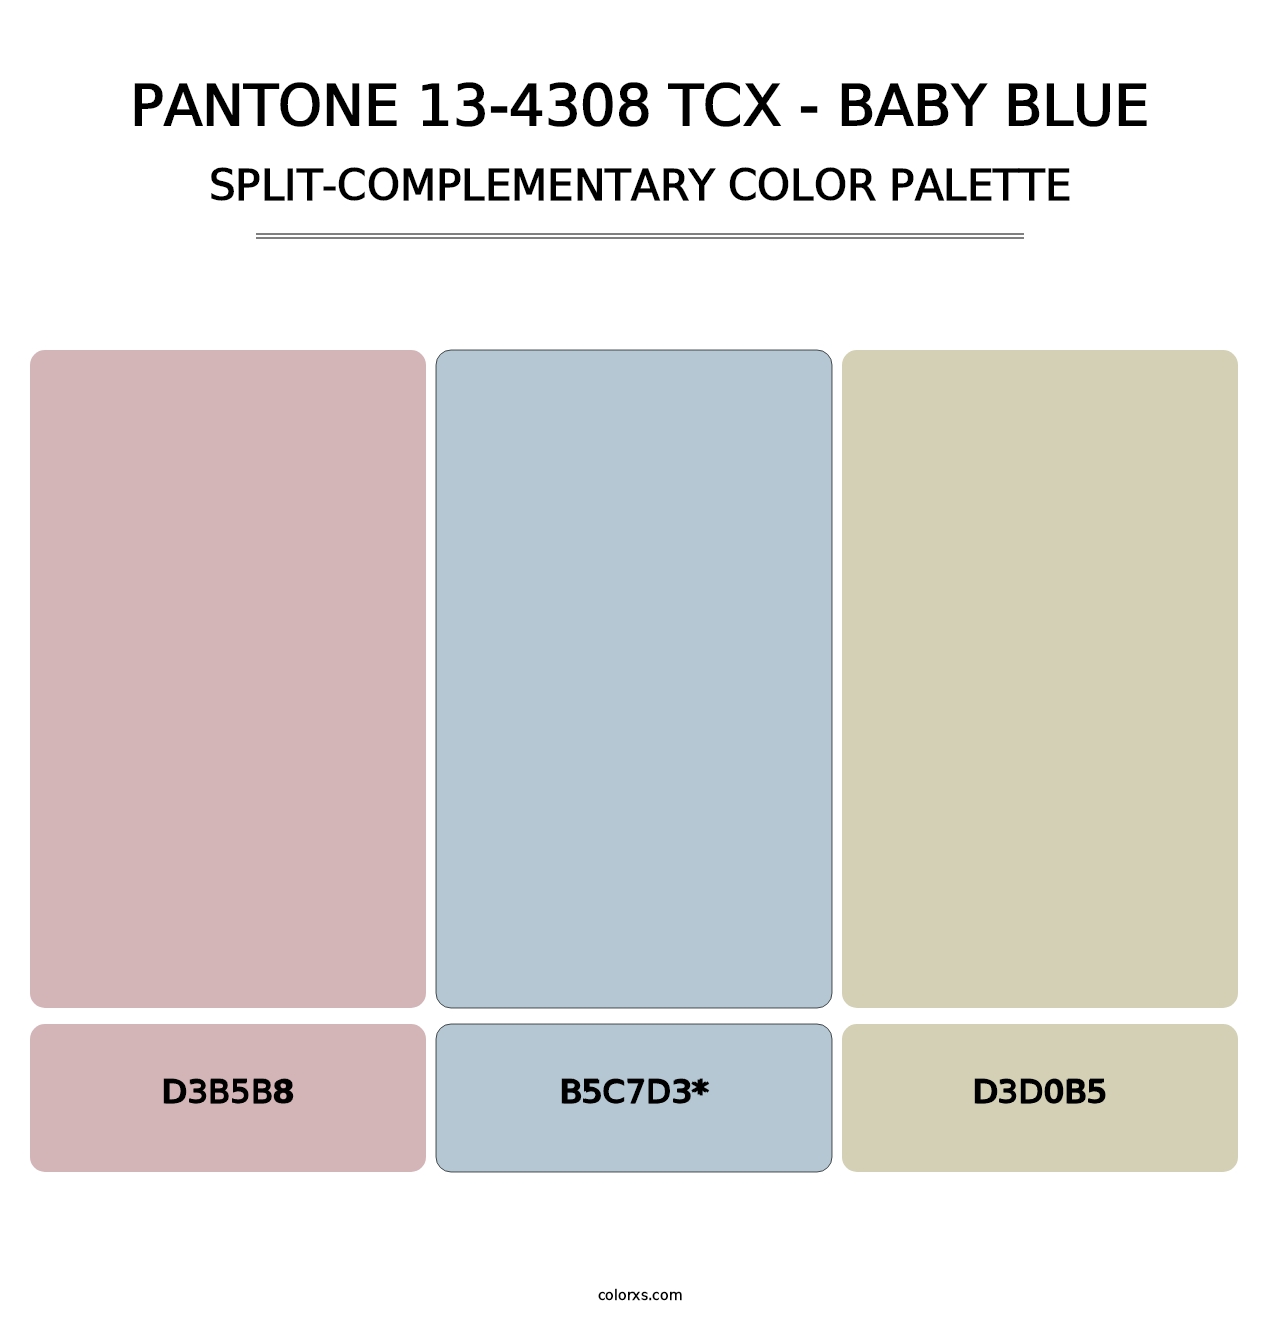 PANTONE 13-4308 TCX - Baby Blue - Split-Complementary Color Palette